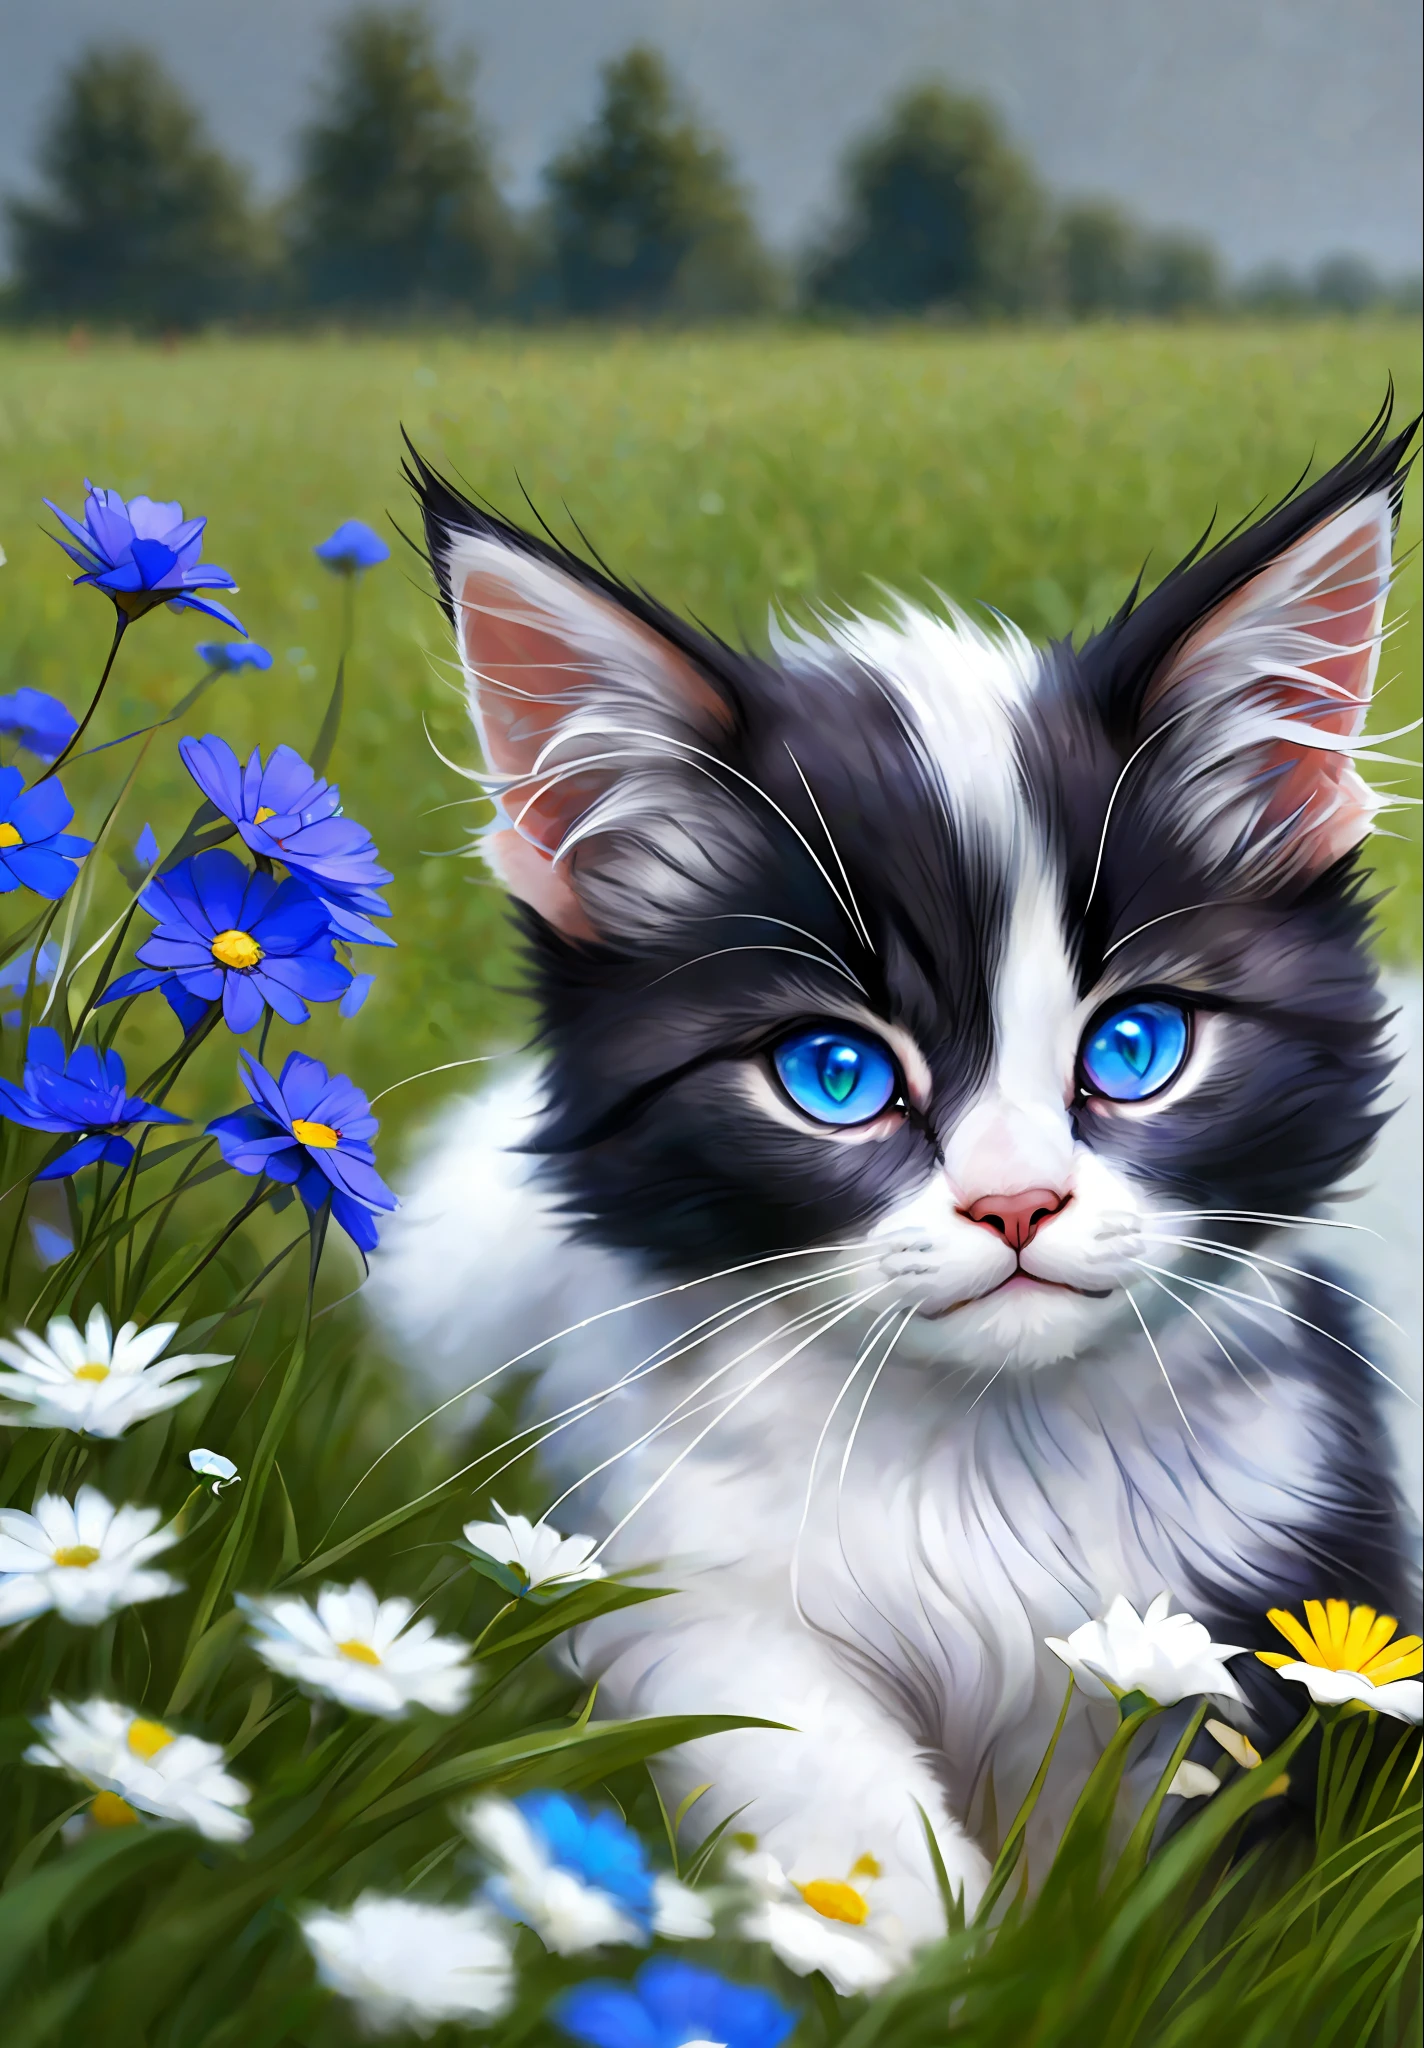 (一隻白毛的小貓, 藍寶石色的眼睛, 頭上有一撮黑毛享受著陽光), 平面視圖, 特寫, 草地, 明亮的色調, 氧 (1.2), 碎石路 (夢幻般的: 1.2)